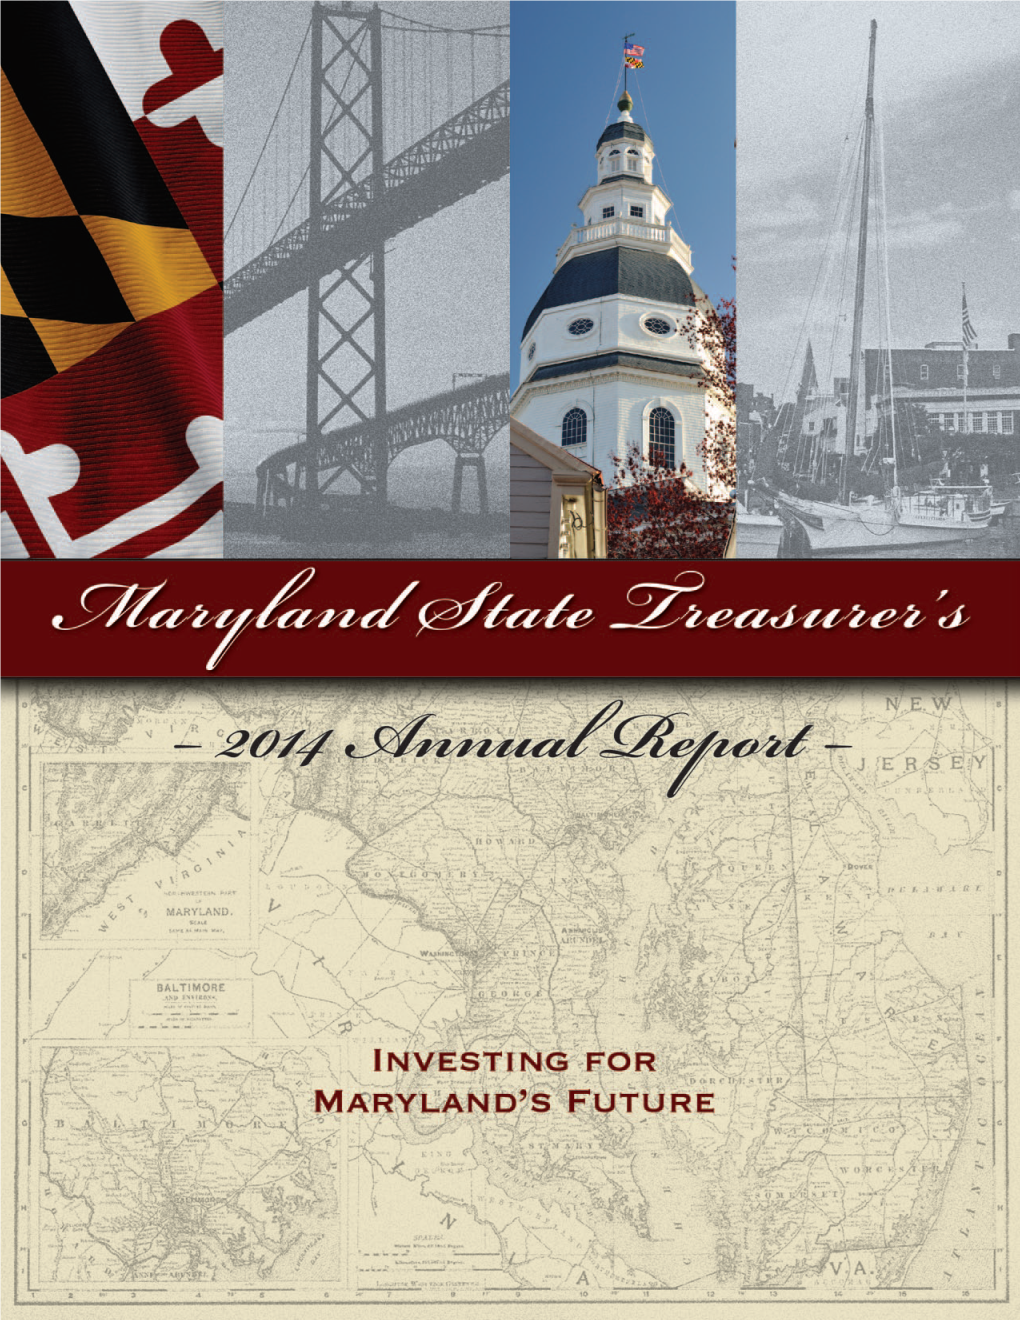 State Treasurer's 2014 Annual Report